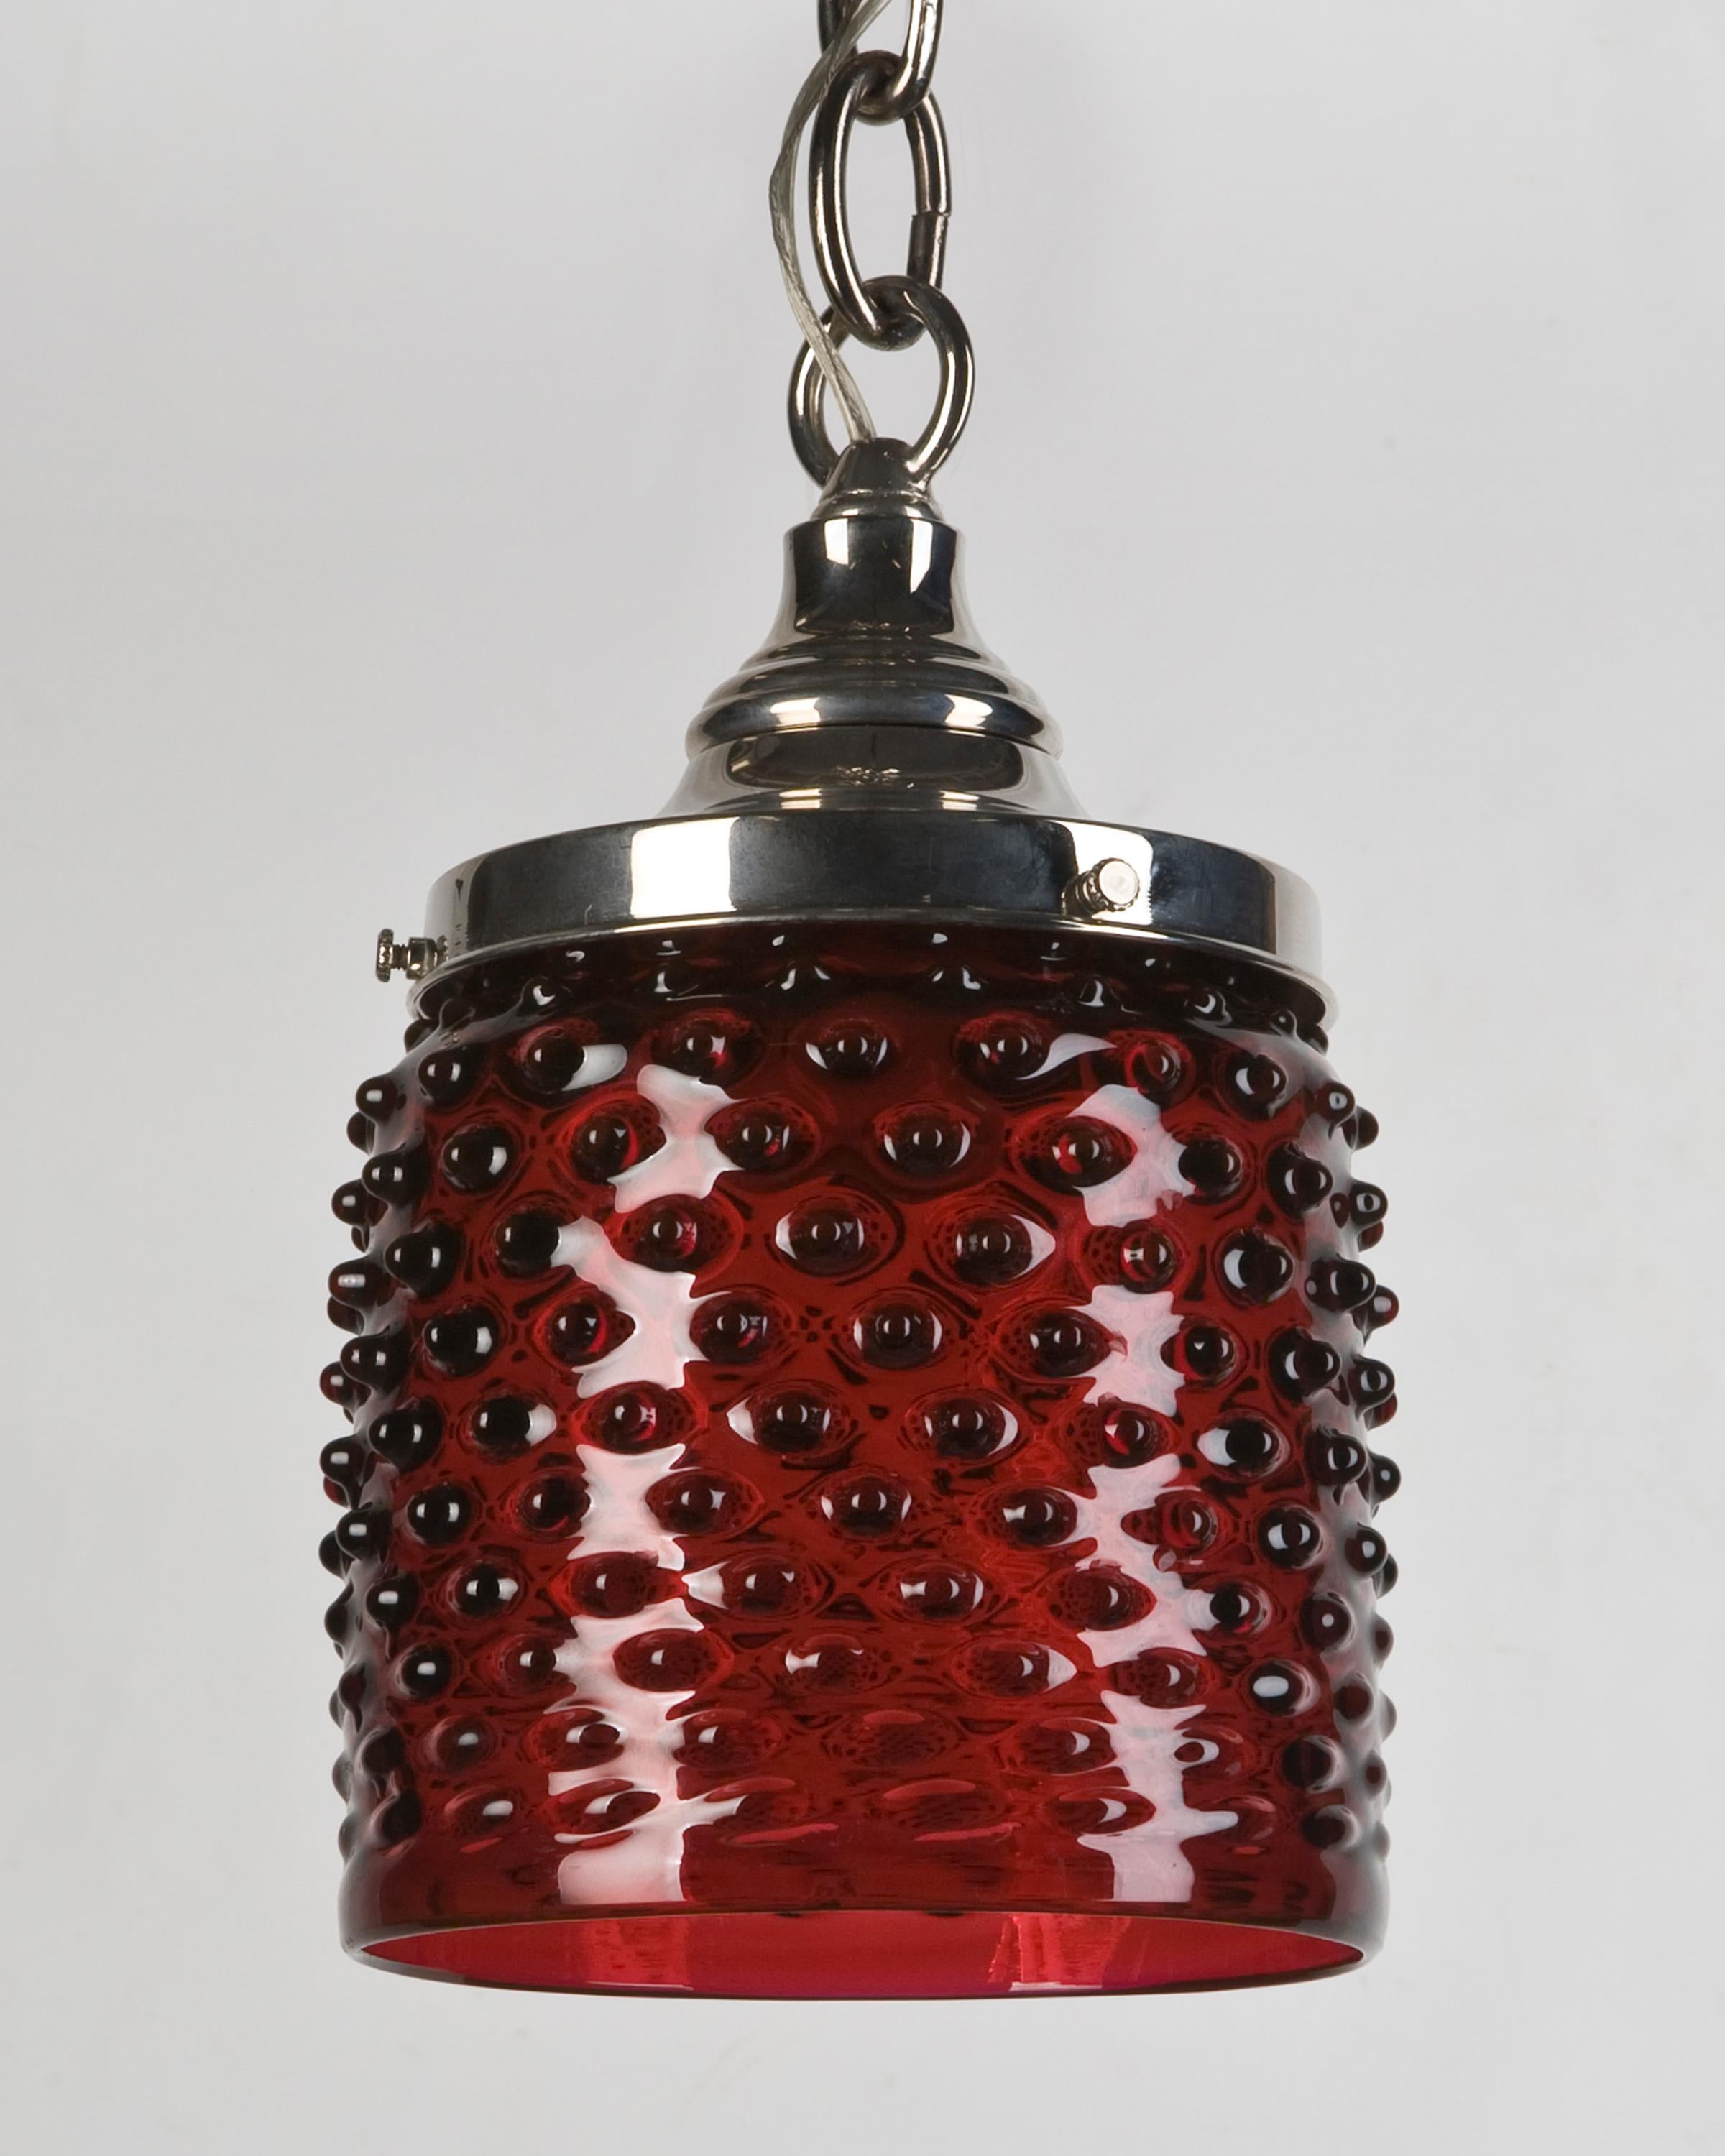 AHL3636
Ein roter, mundgeblasener, zylinderförmiger Anhänger aus Hobnail-Glas mit polierten Nickelbeschlägen. Aufgrund des antiken Charakters dieser Leuchte können einige Kerben oder Unvollkommenheiten im Glas vorhanden sein.

Abmessungen:
Aktuelle